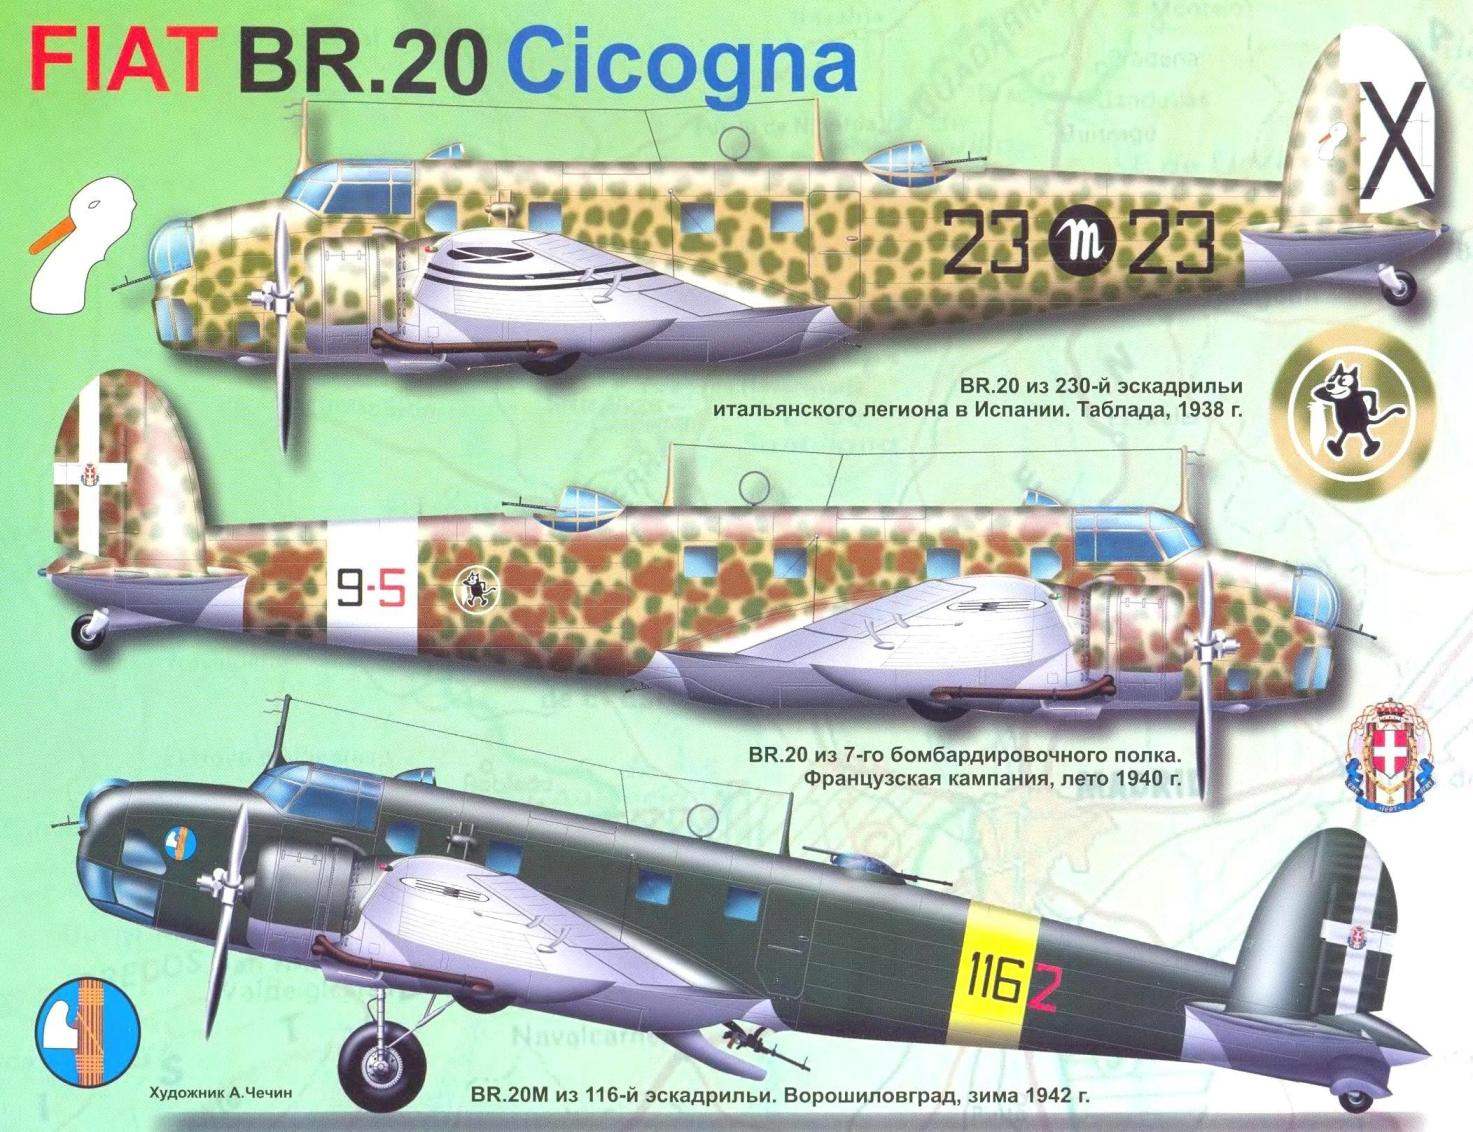 Итальянский бомбардировщик FIAT BR.20 Cicogna